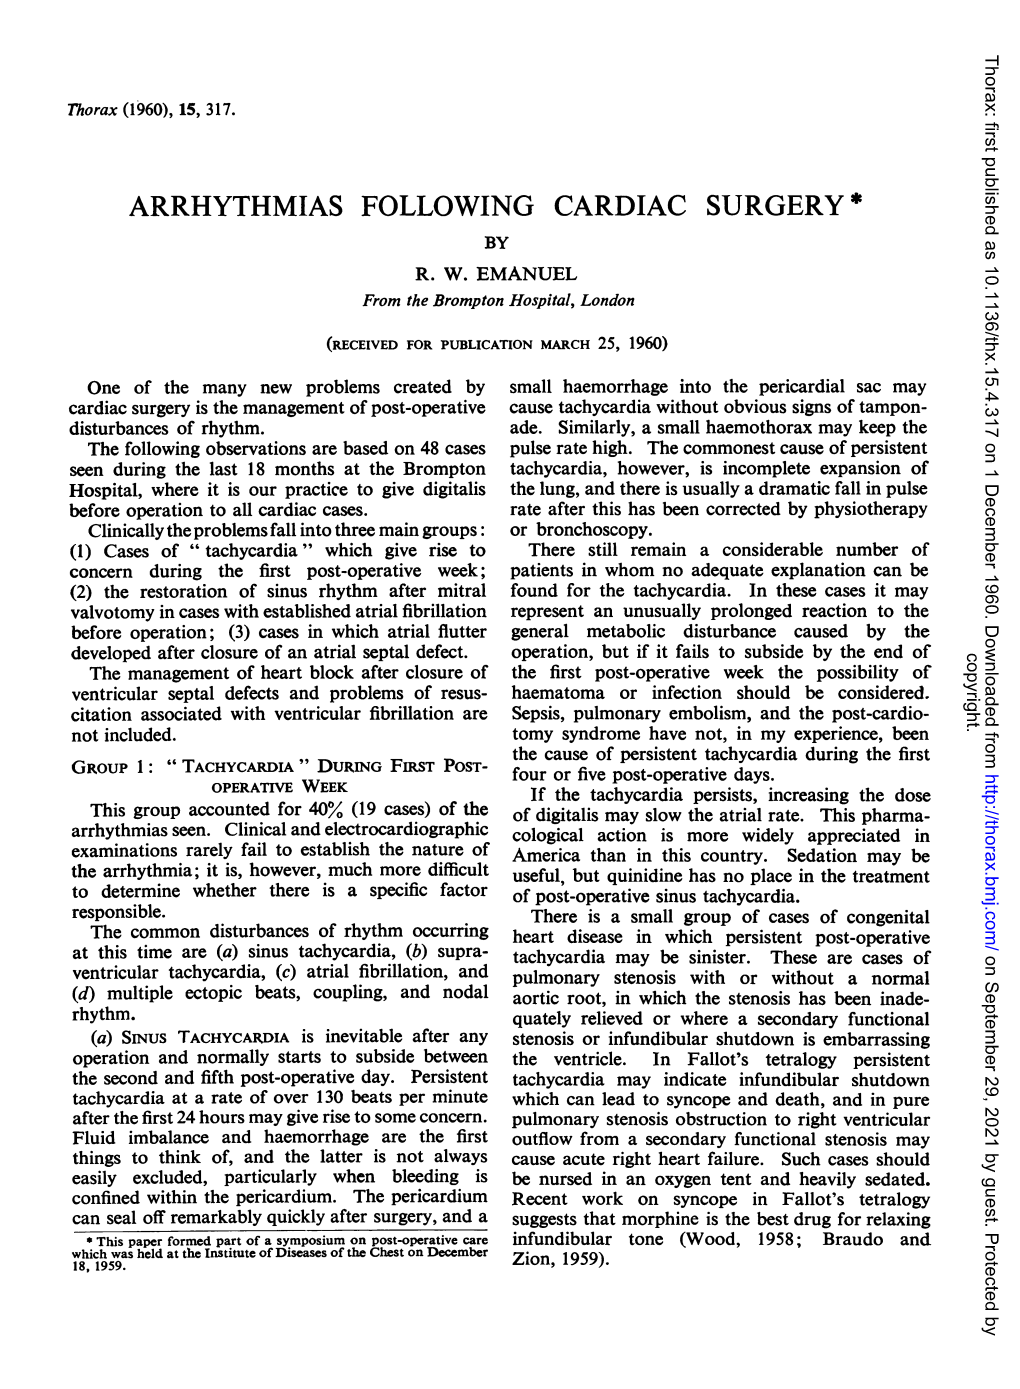 Arrhythmias Following Cardiac Surgery * by R